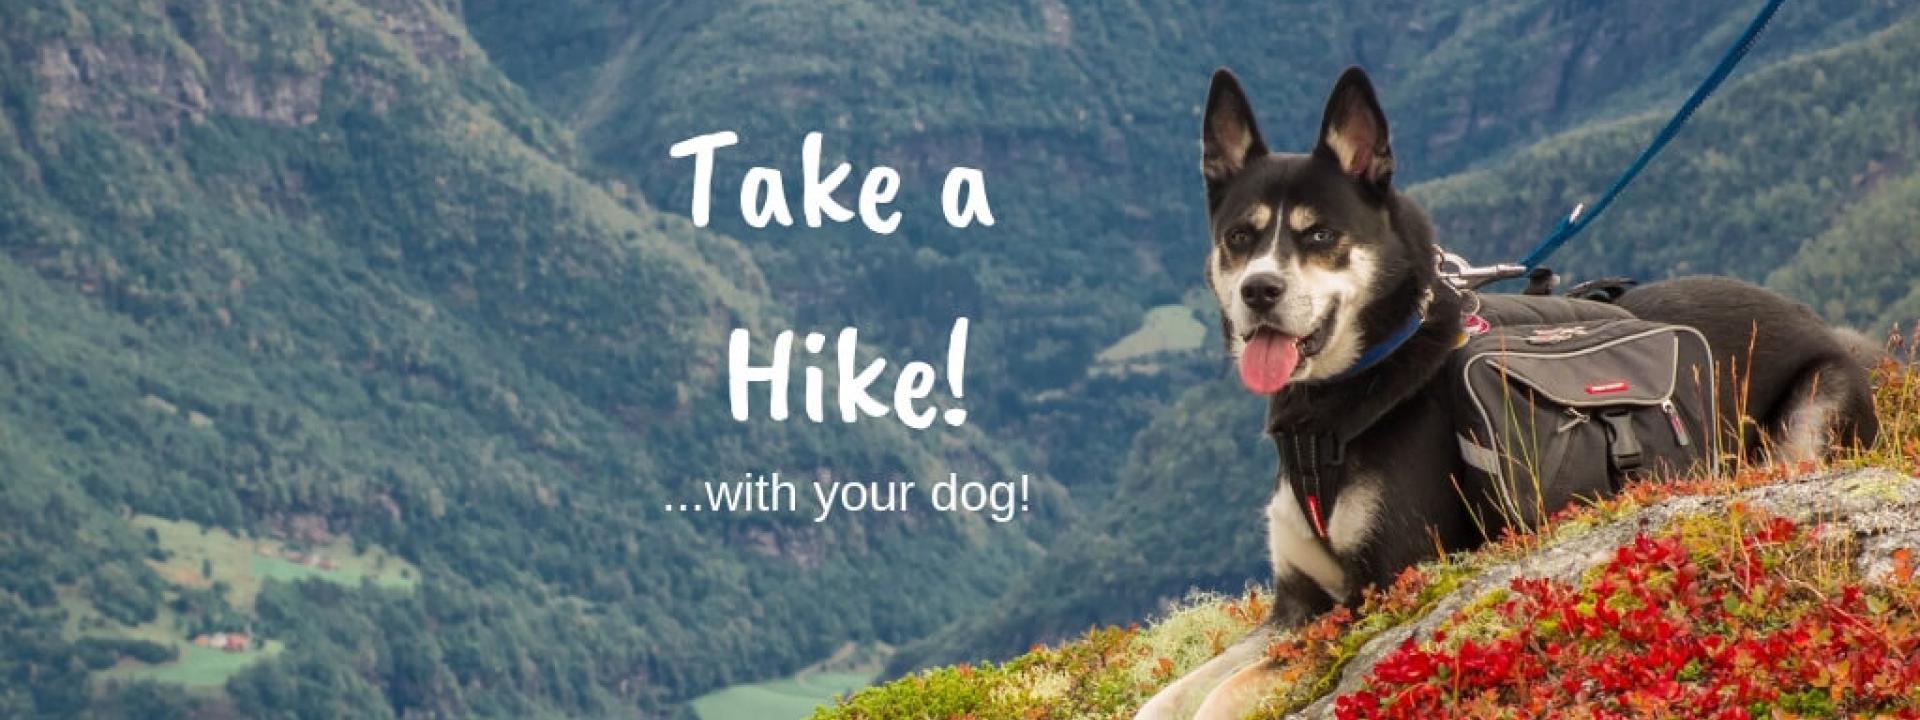 take-hike-blog-header.jpg